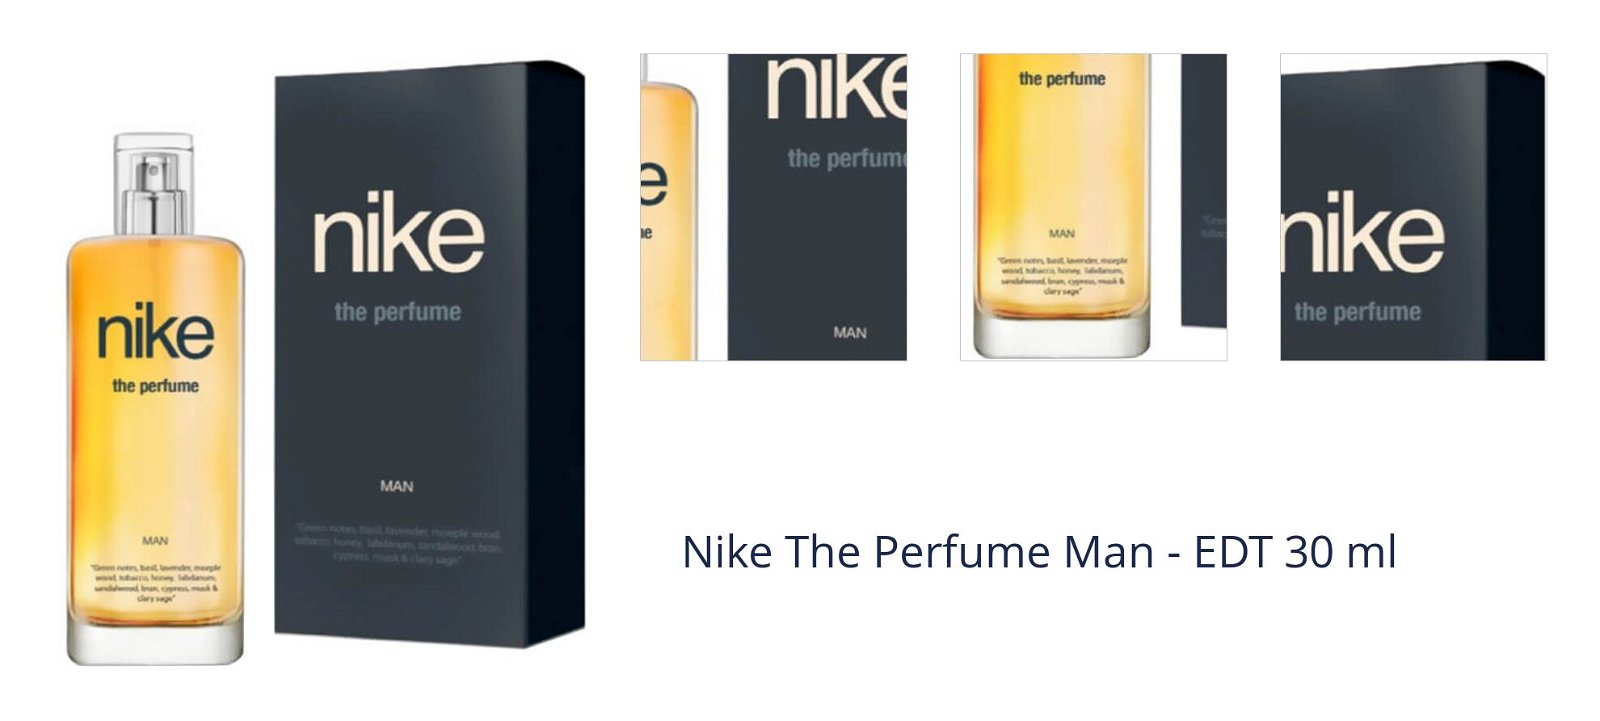 Nike The Perfume Man - EDT 30 ml 1